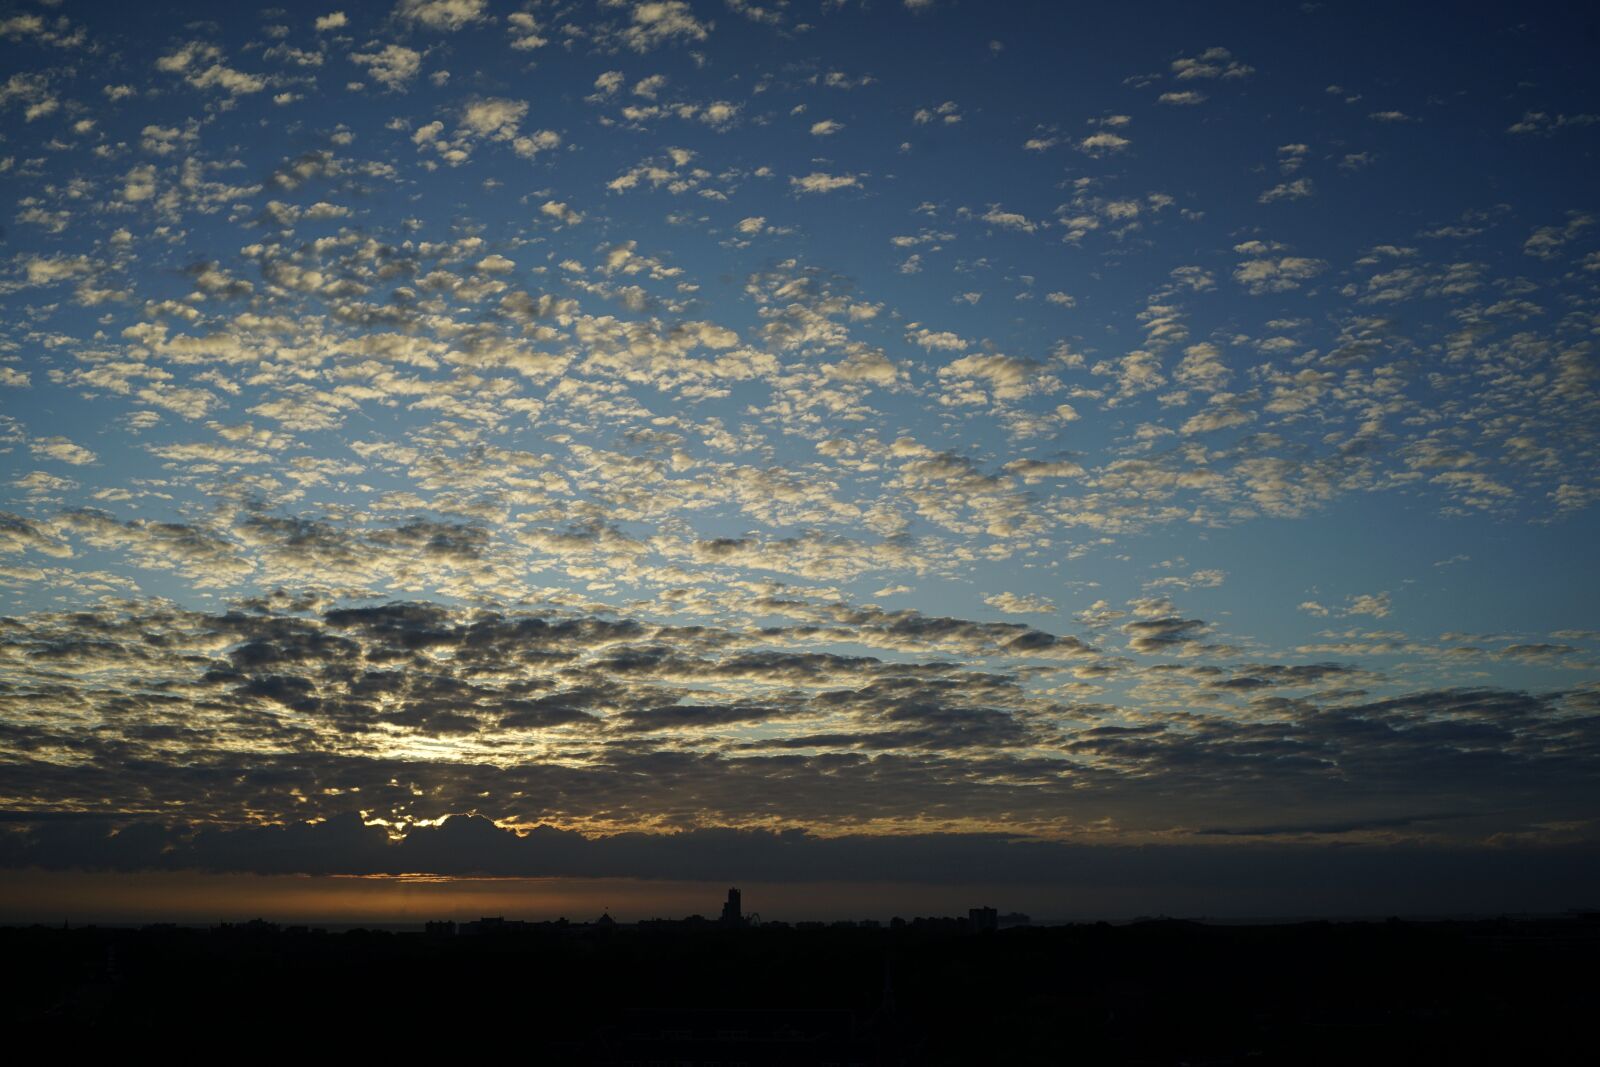 Sony a7 II sample photo. Sunset, scheveningen, evening sky photography